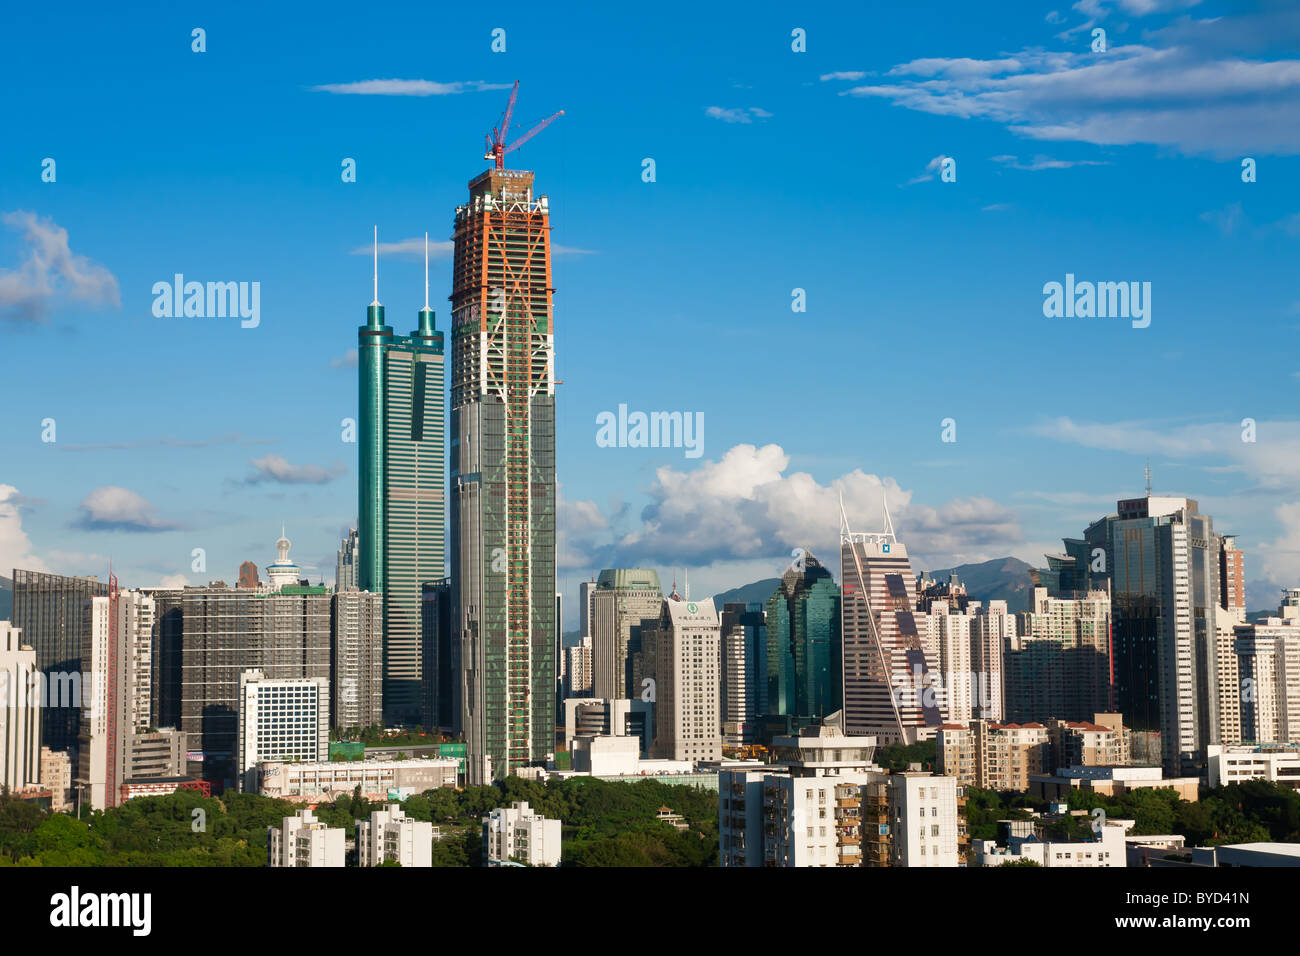 City skyline of Shenzhen, China Stock Photo